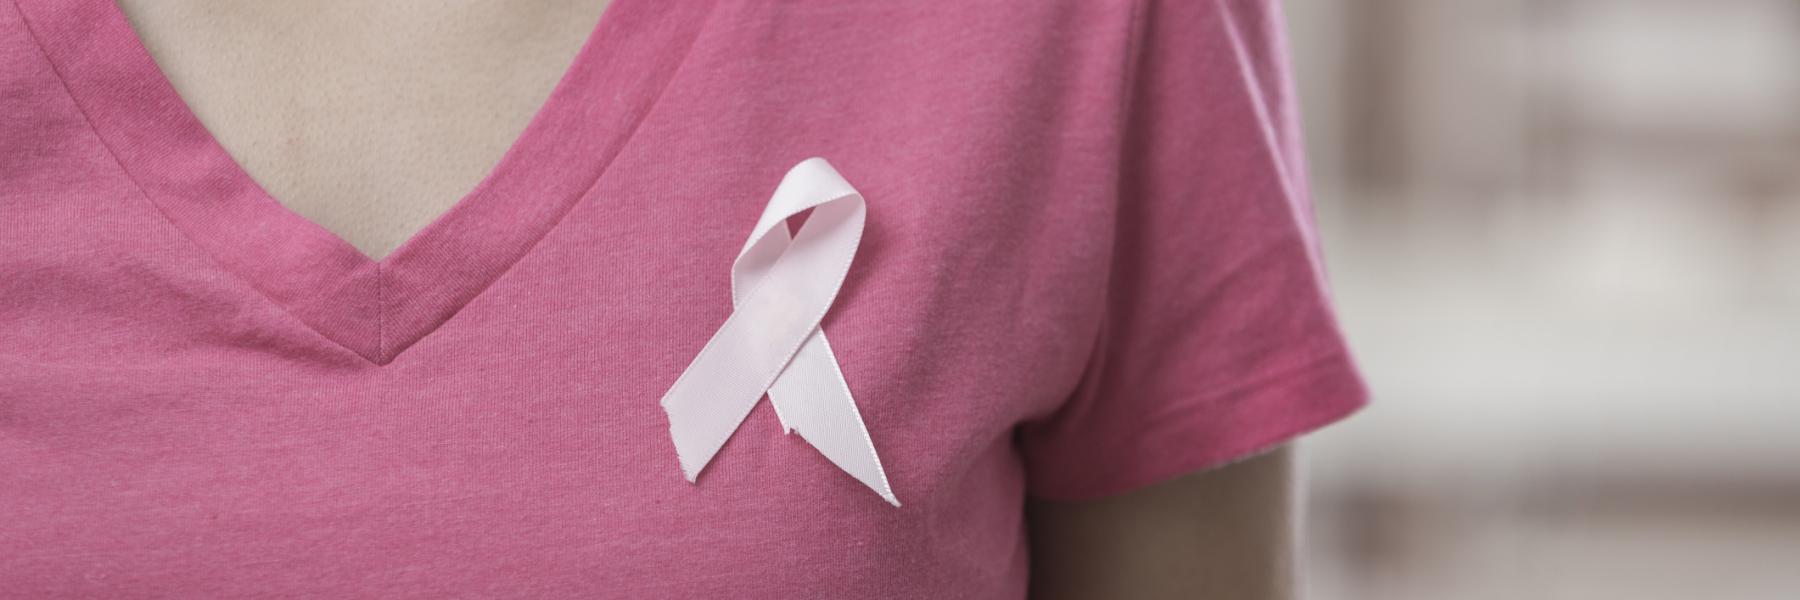 الشهر الوردي للتوعية بسرطان الثدي!